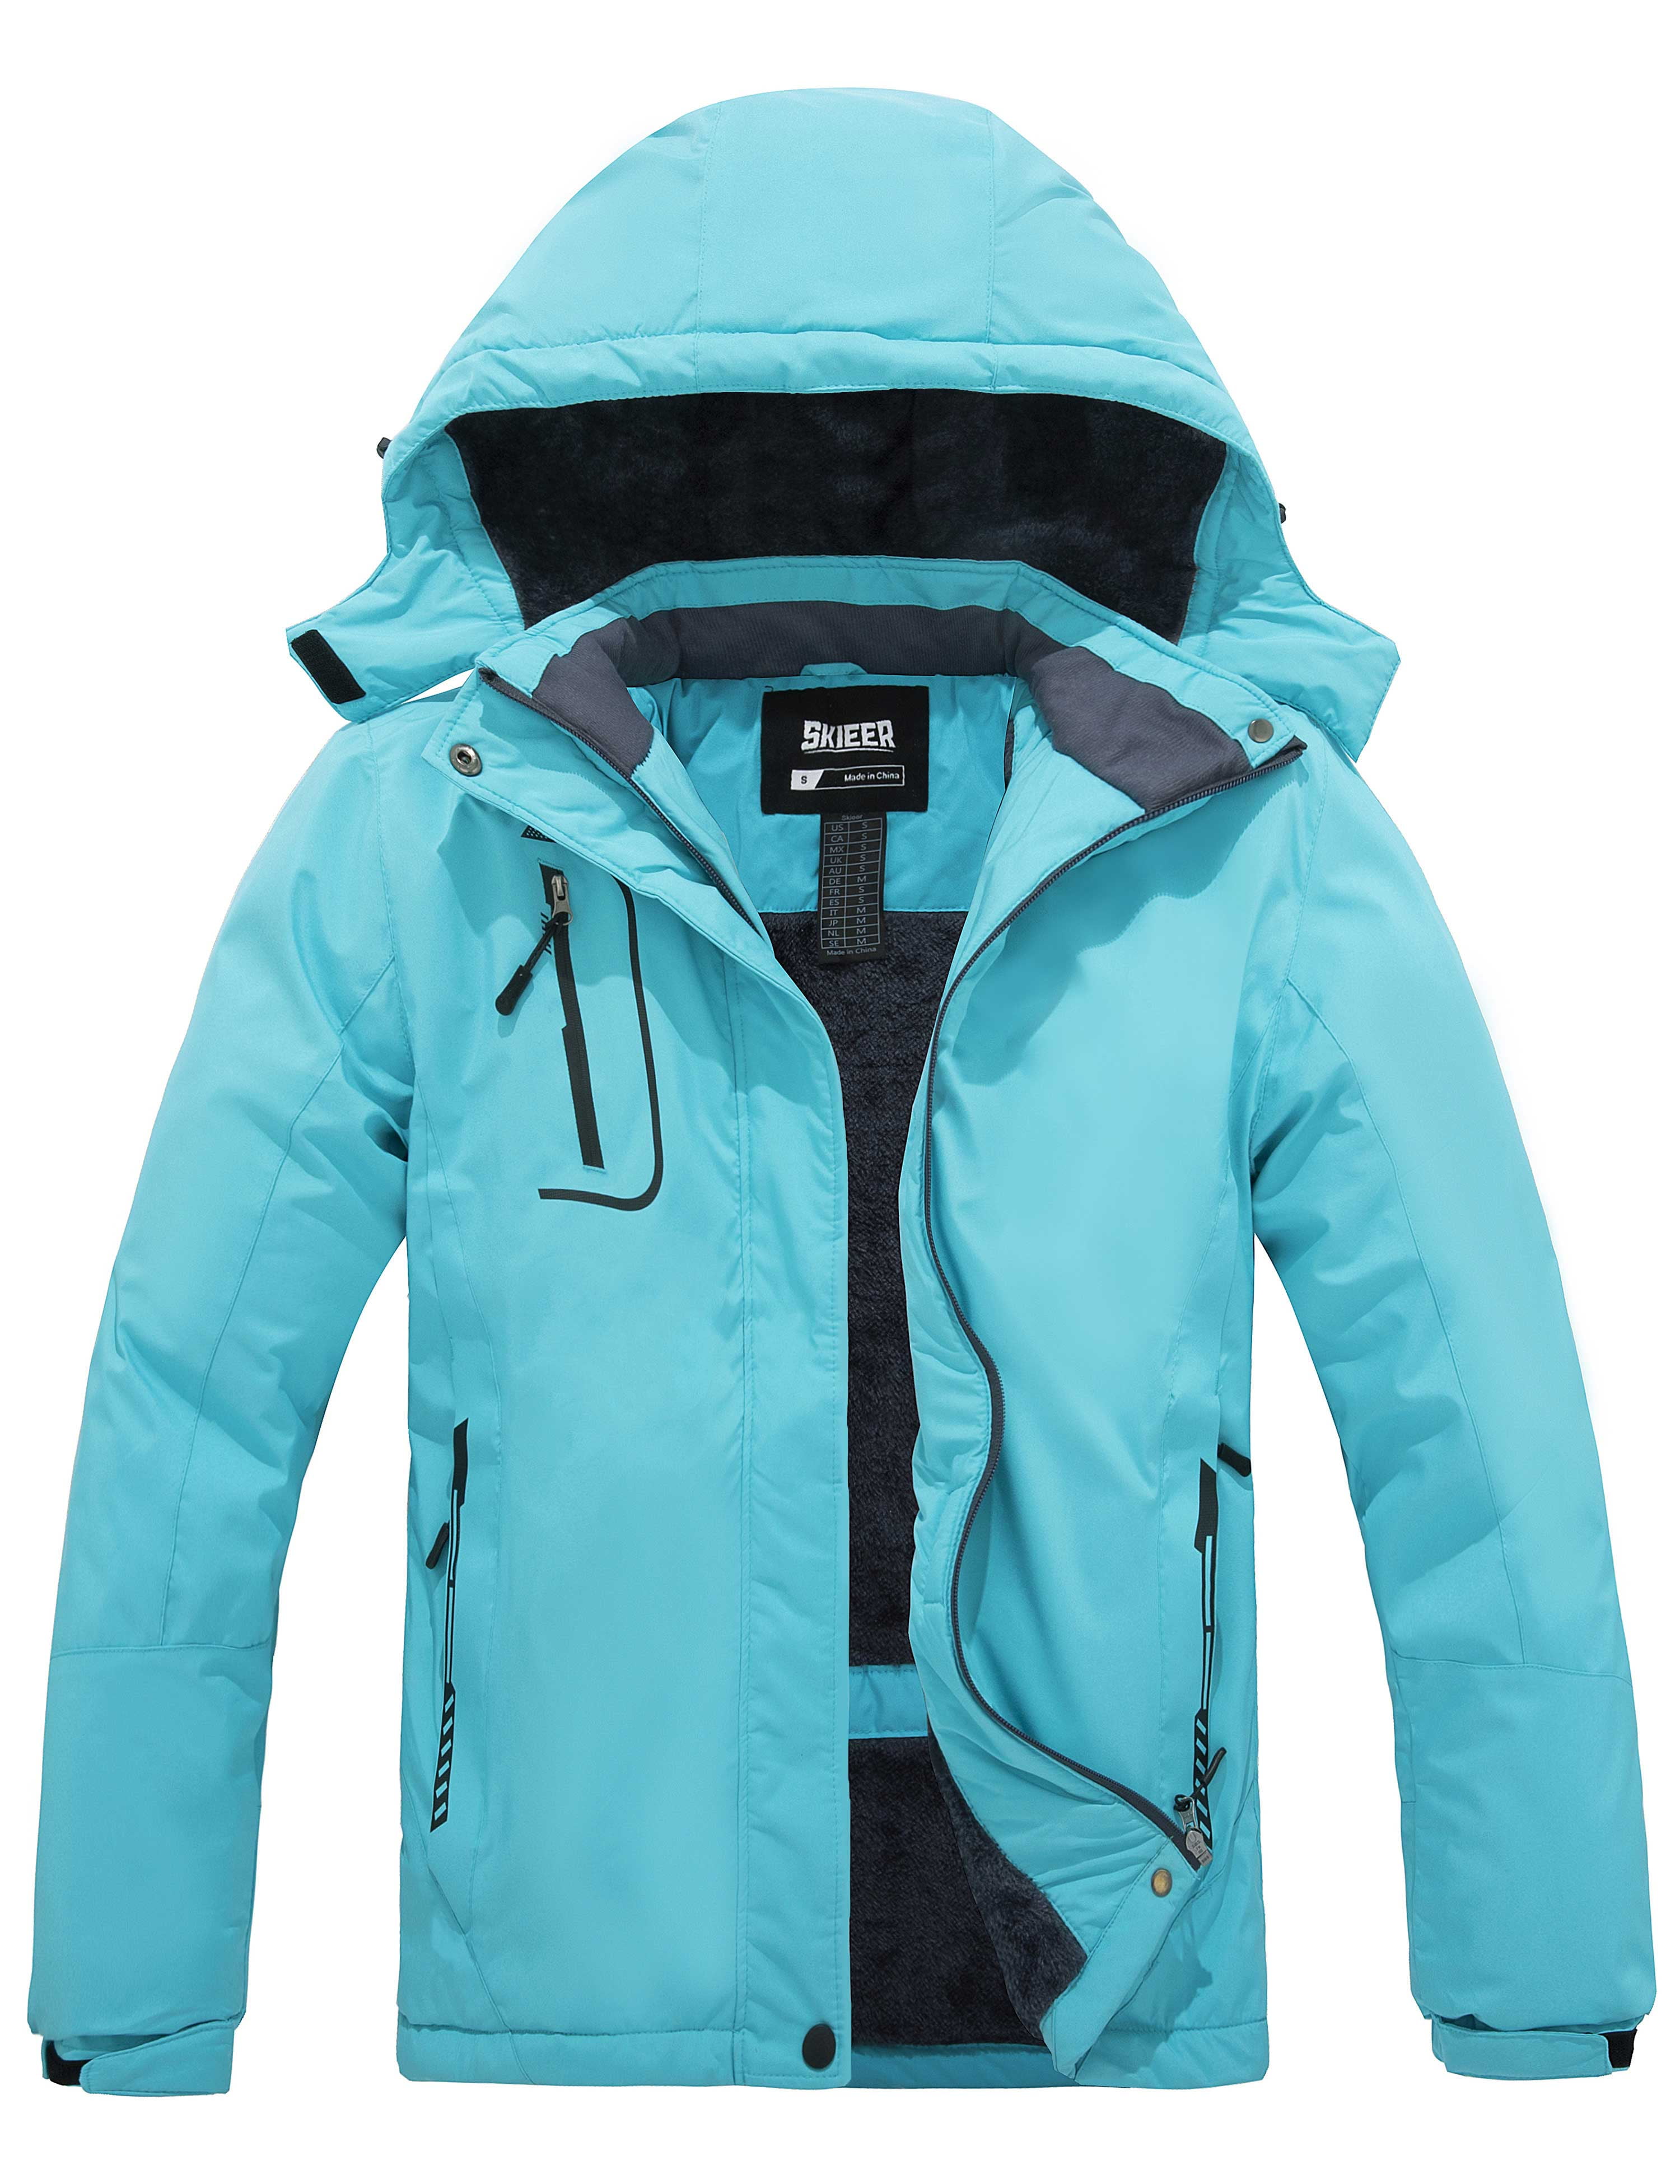 Skieer Women's Mountain Waterproof Ski Jacket Winter Rain Jacket Warm Fleece Snow Coat 